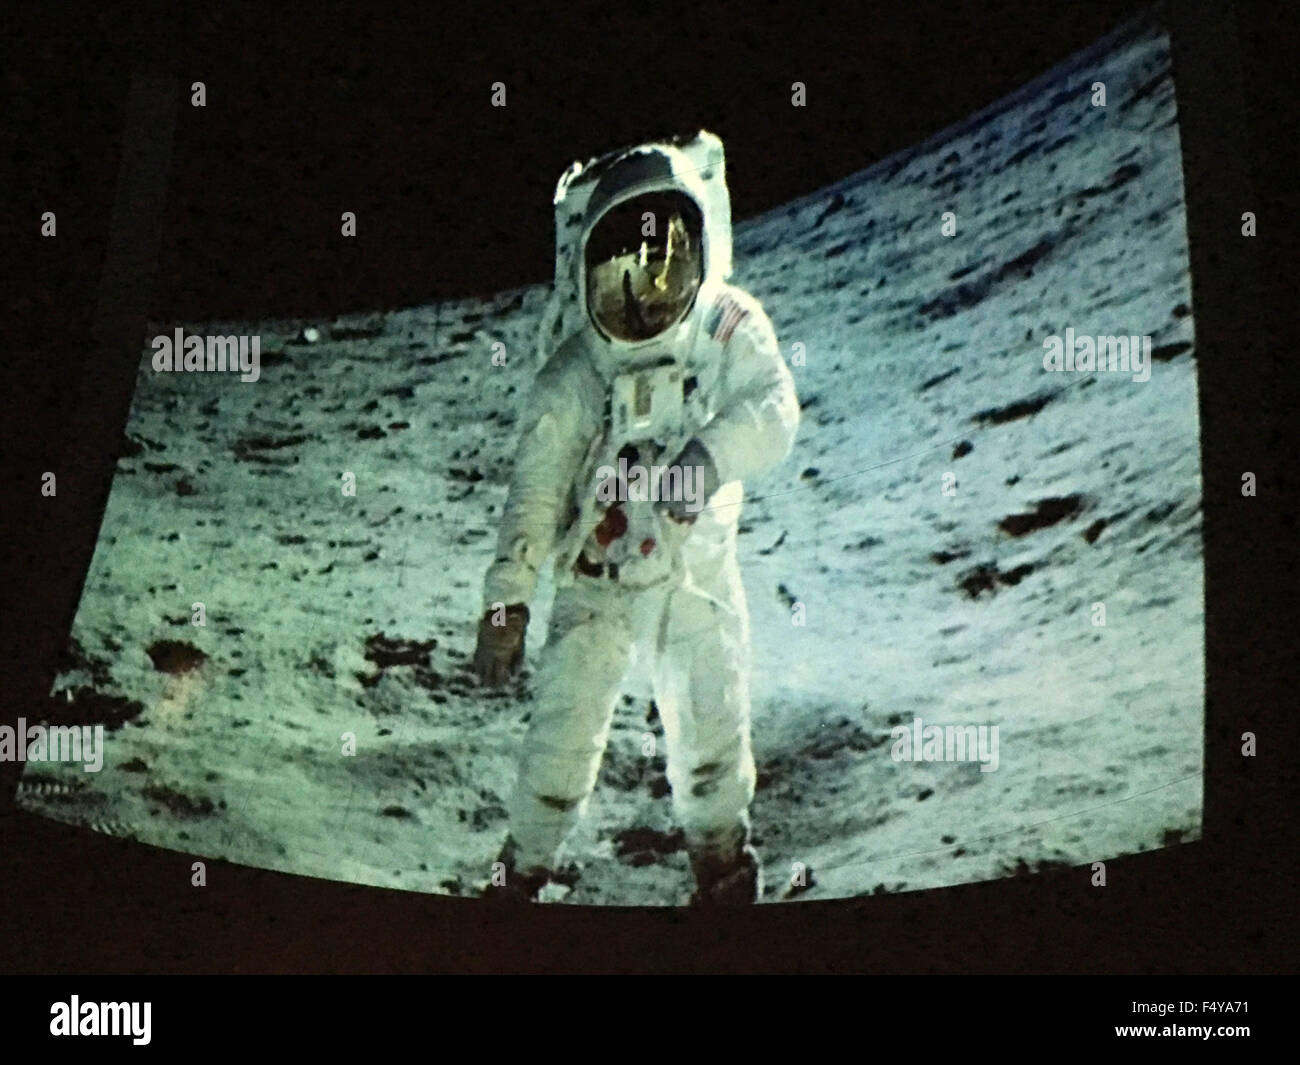 Città Giardino, New York, Stati Uniti d'America. 23 Ott, 2015. Foto di astronauta Edwin Buzz Aldrin, in tuta camminando sulla superficie lunare, è stato preso da Neil Armstrong il 20 luglio 1969, durante la missione Apollo 11, durante la quale l'aldrin è stata la seconda persona mai a camminare sulla luna. Aldrin ha spiegato che a volte è identificato erroneamente come foto di Armstrong. Il pubblico ha visto la foto proiettata sulla cupola della jetBlue Sky Theatre planetario di Long Island la culla del Museo dell'aviazione. Quindi Aldrin firmato copie del suo nuovo per bambini di grado medio prenota Benvenuti su Marte: la realizzazione di una casa sul pianeta rosso. (Credito Foto Stock